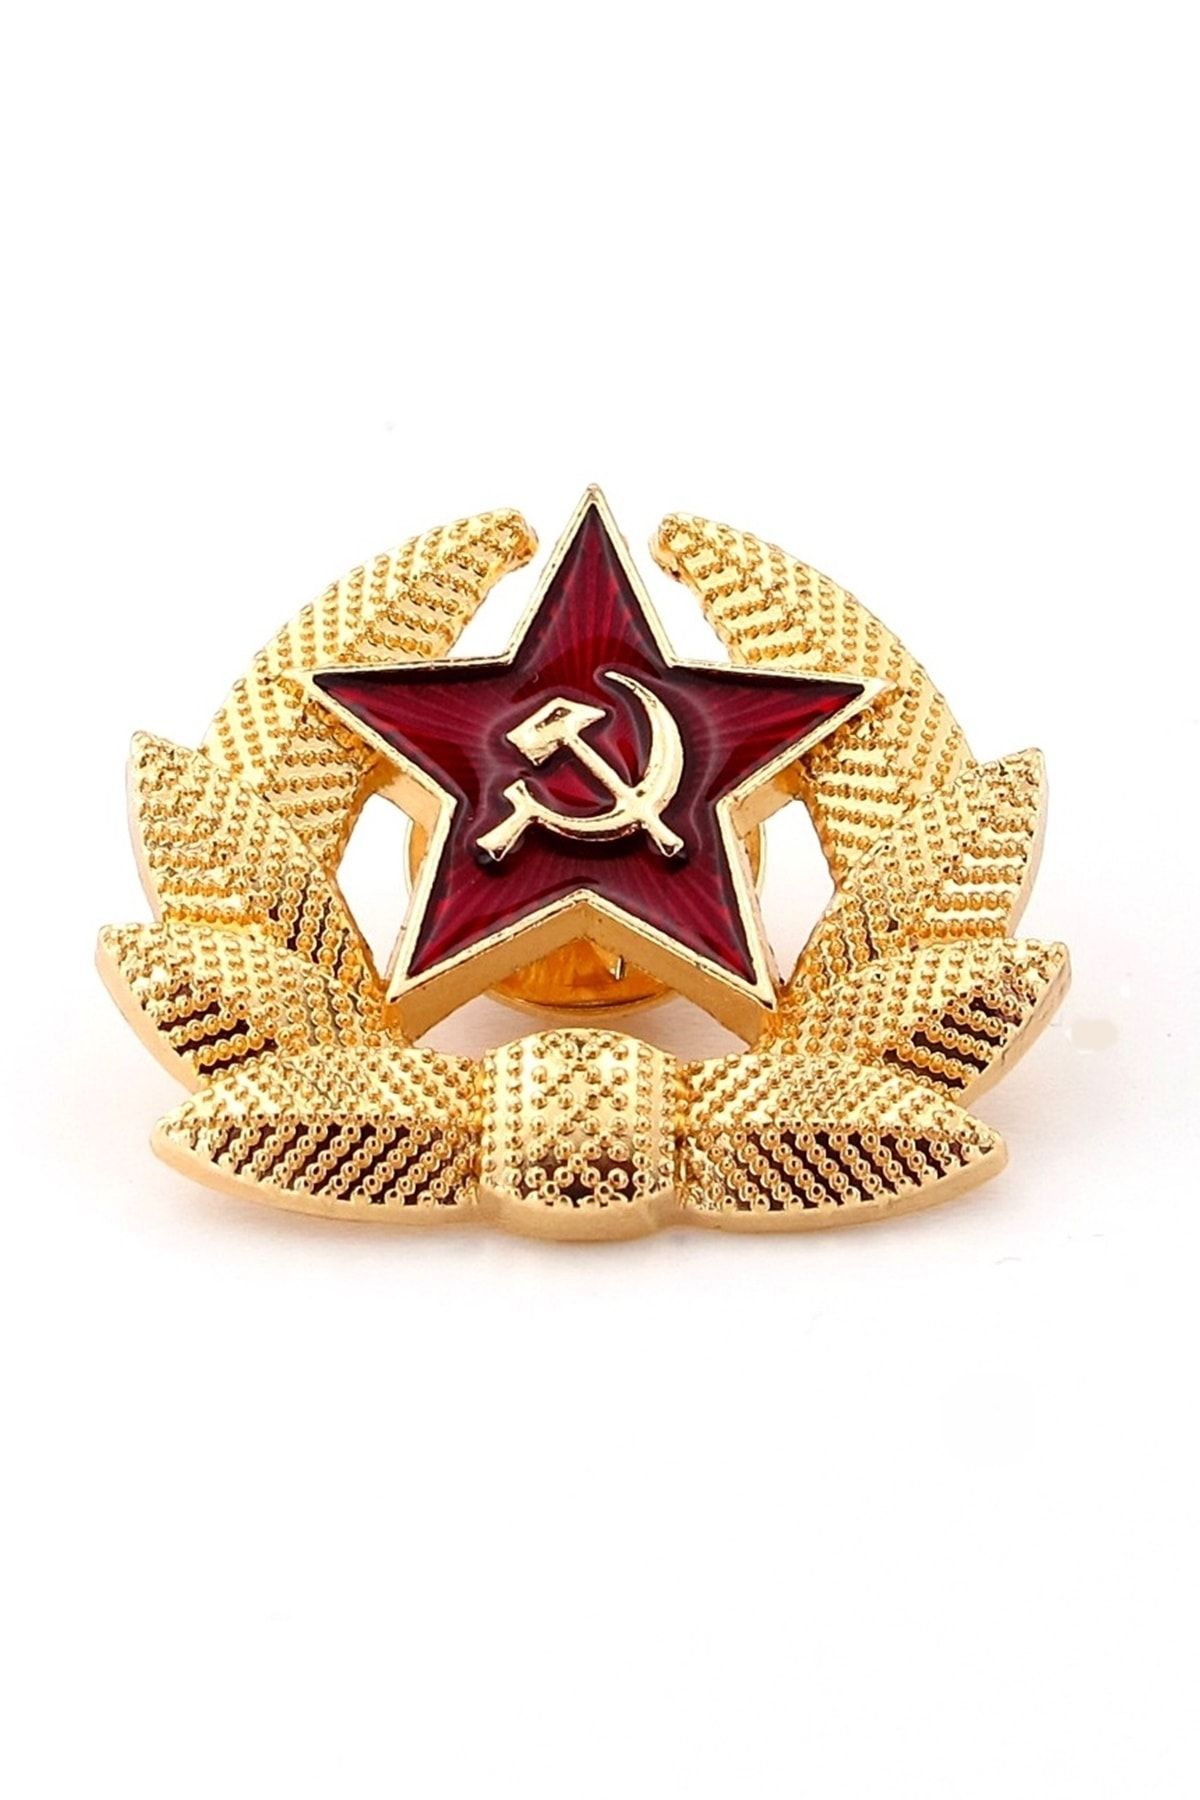 Solfera Kızıl Yıldız S.s.c.b. Orak Çekiç Çelenk Sovyet Pin Rozet Rz010